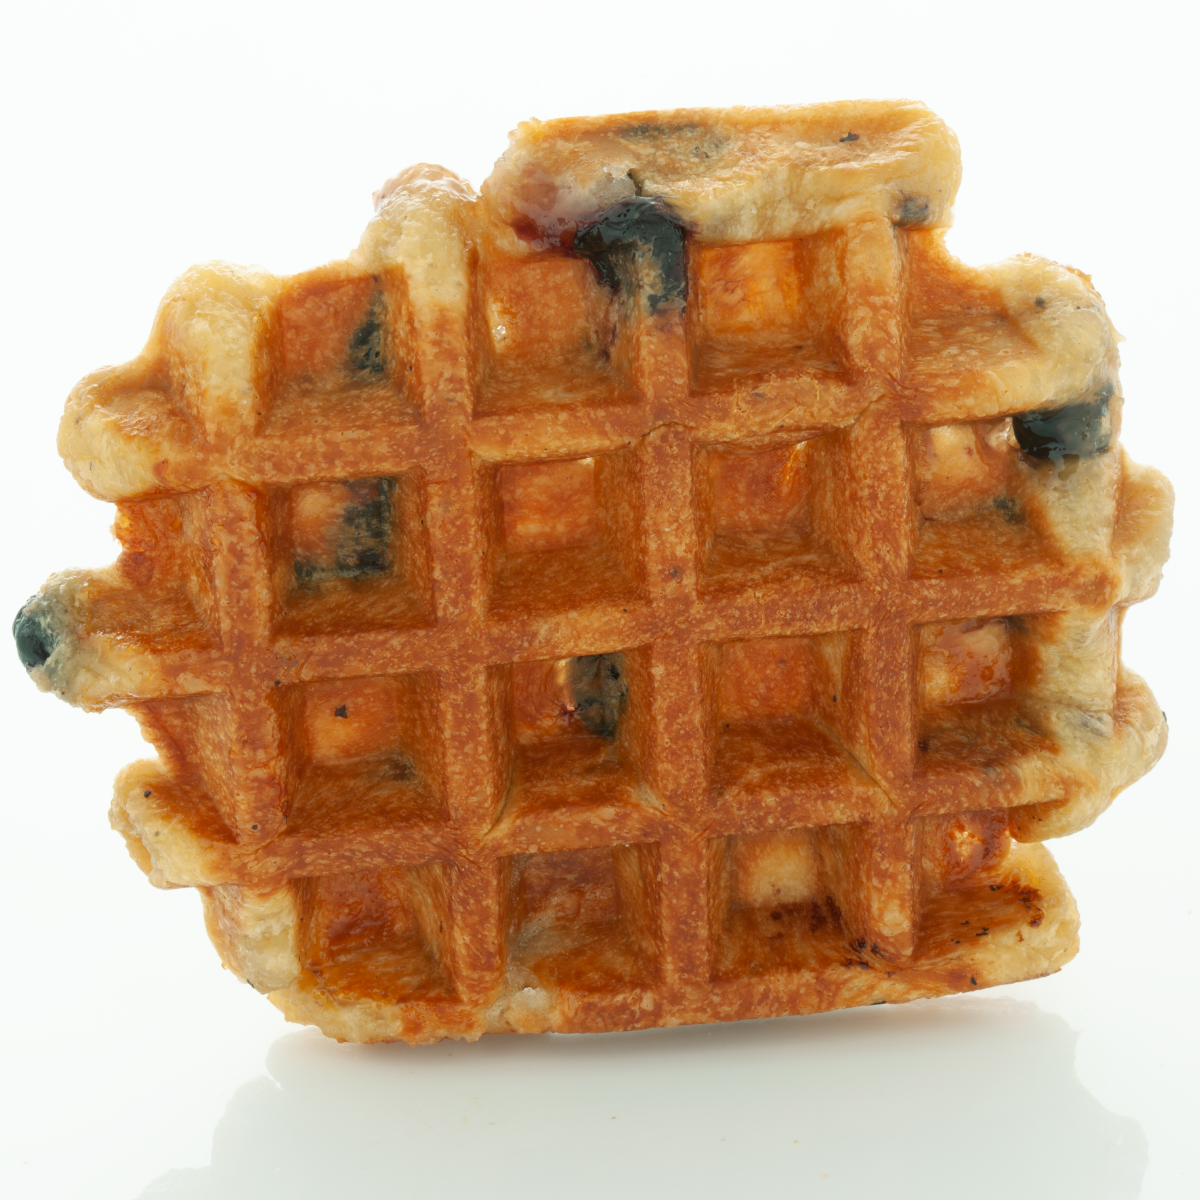 Blueberry Waffle Product